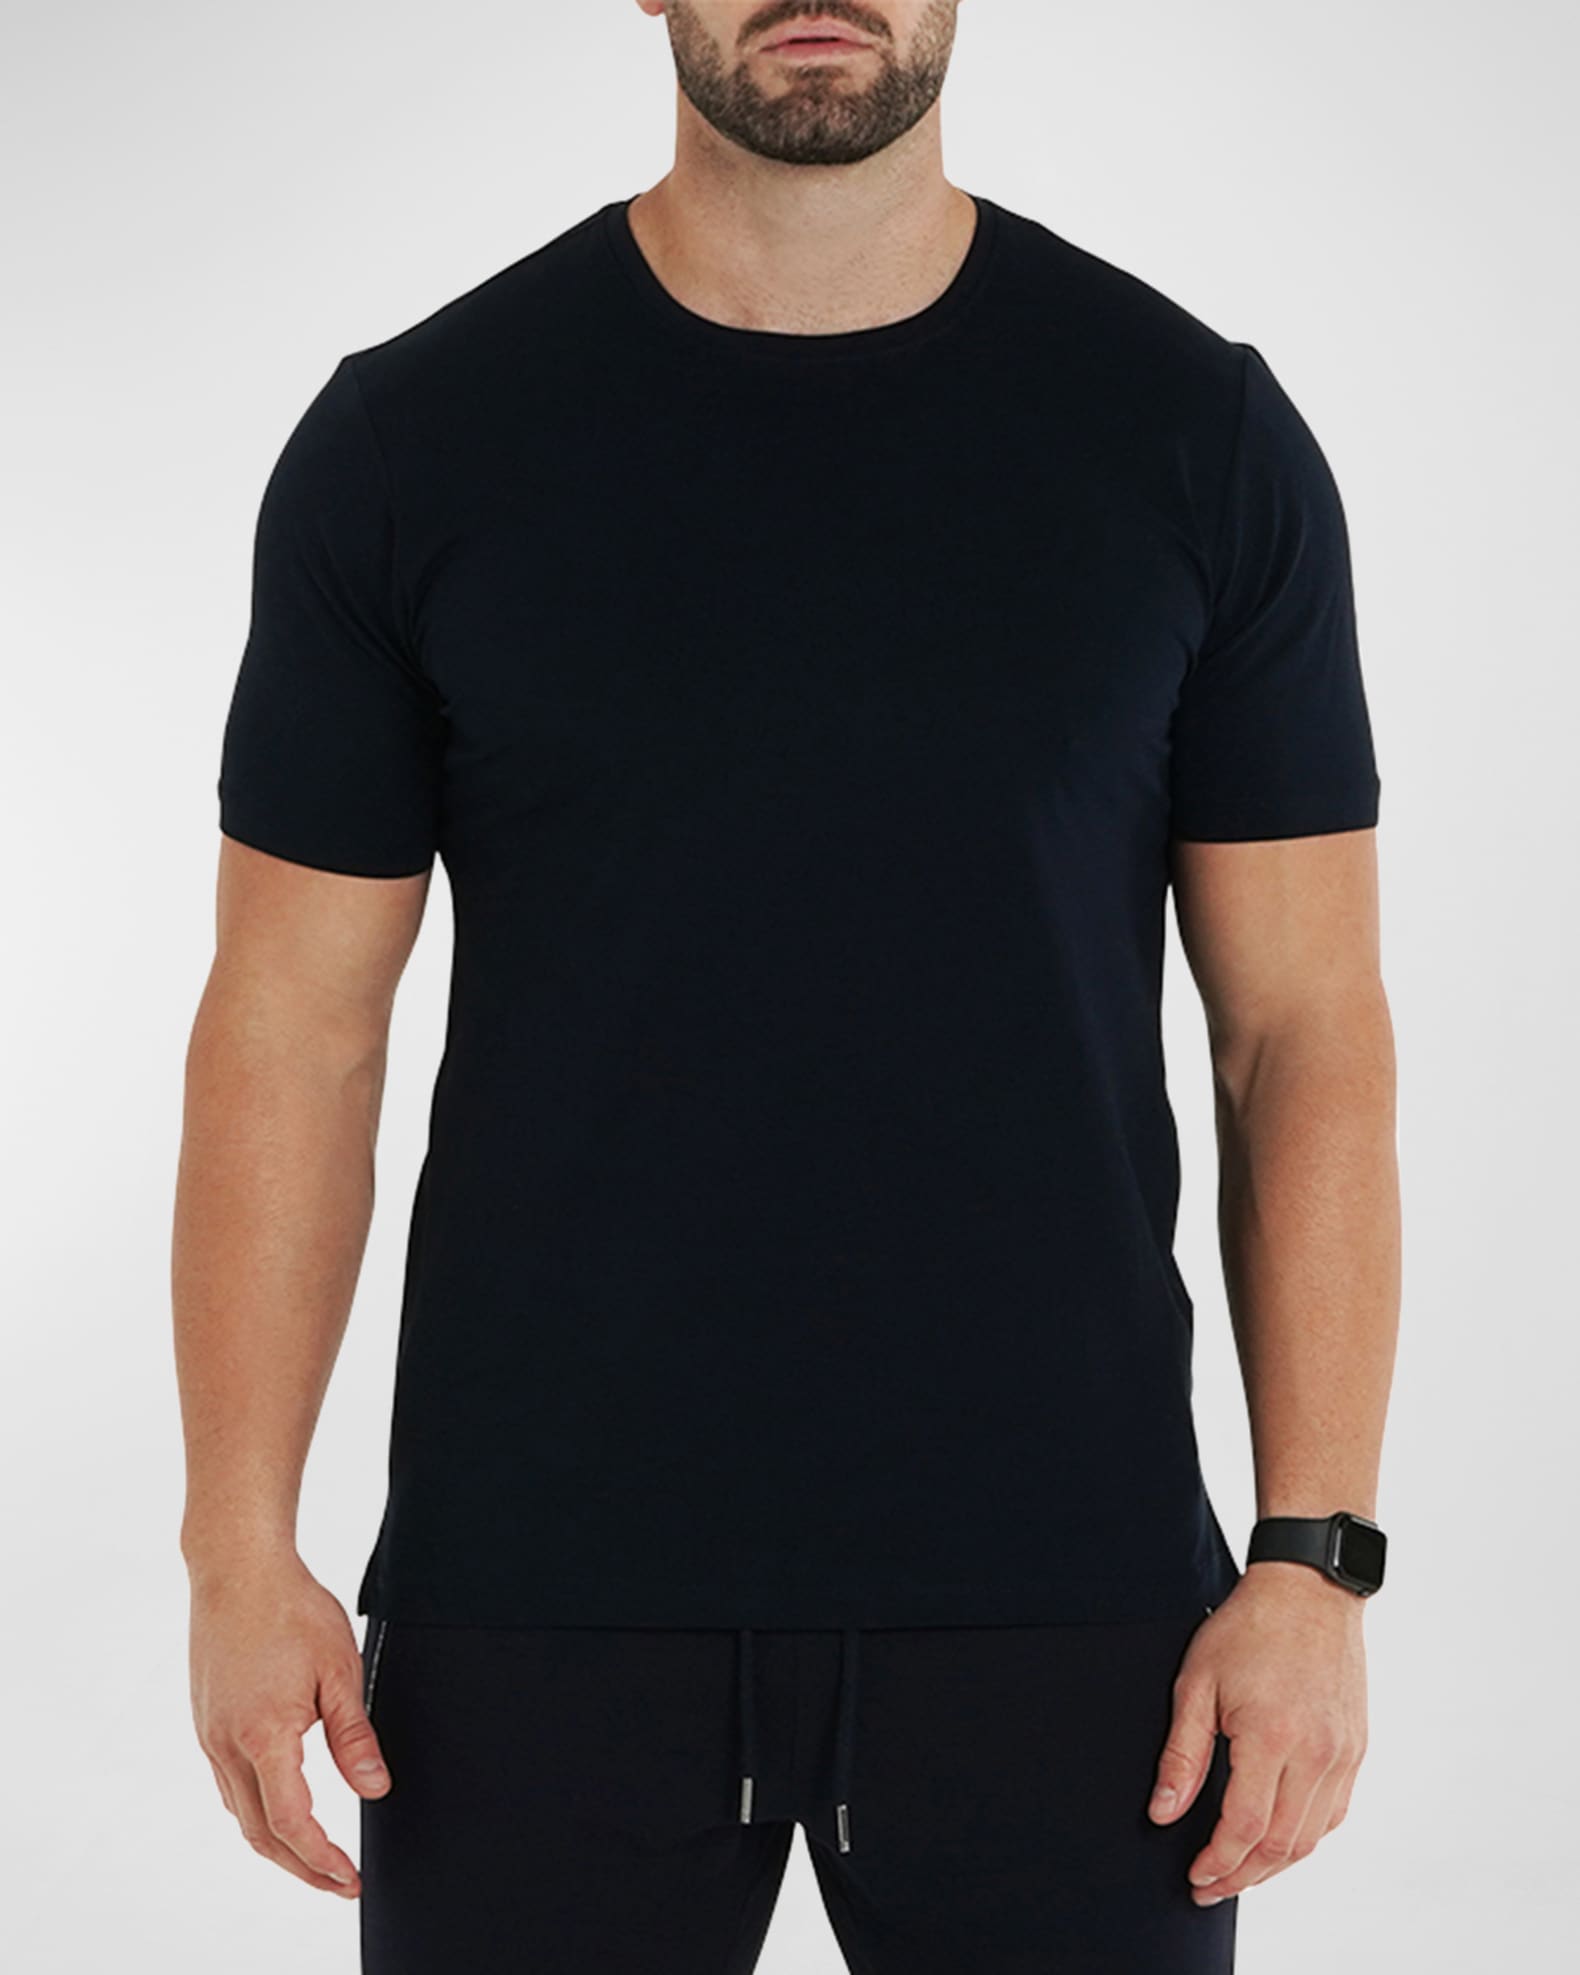 Maceoo Men's Simple T-Shirt | Neiman Marcus